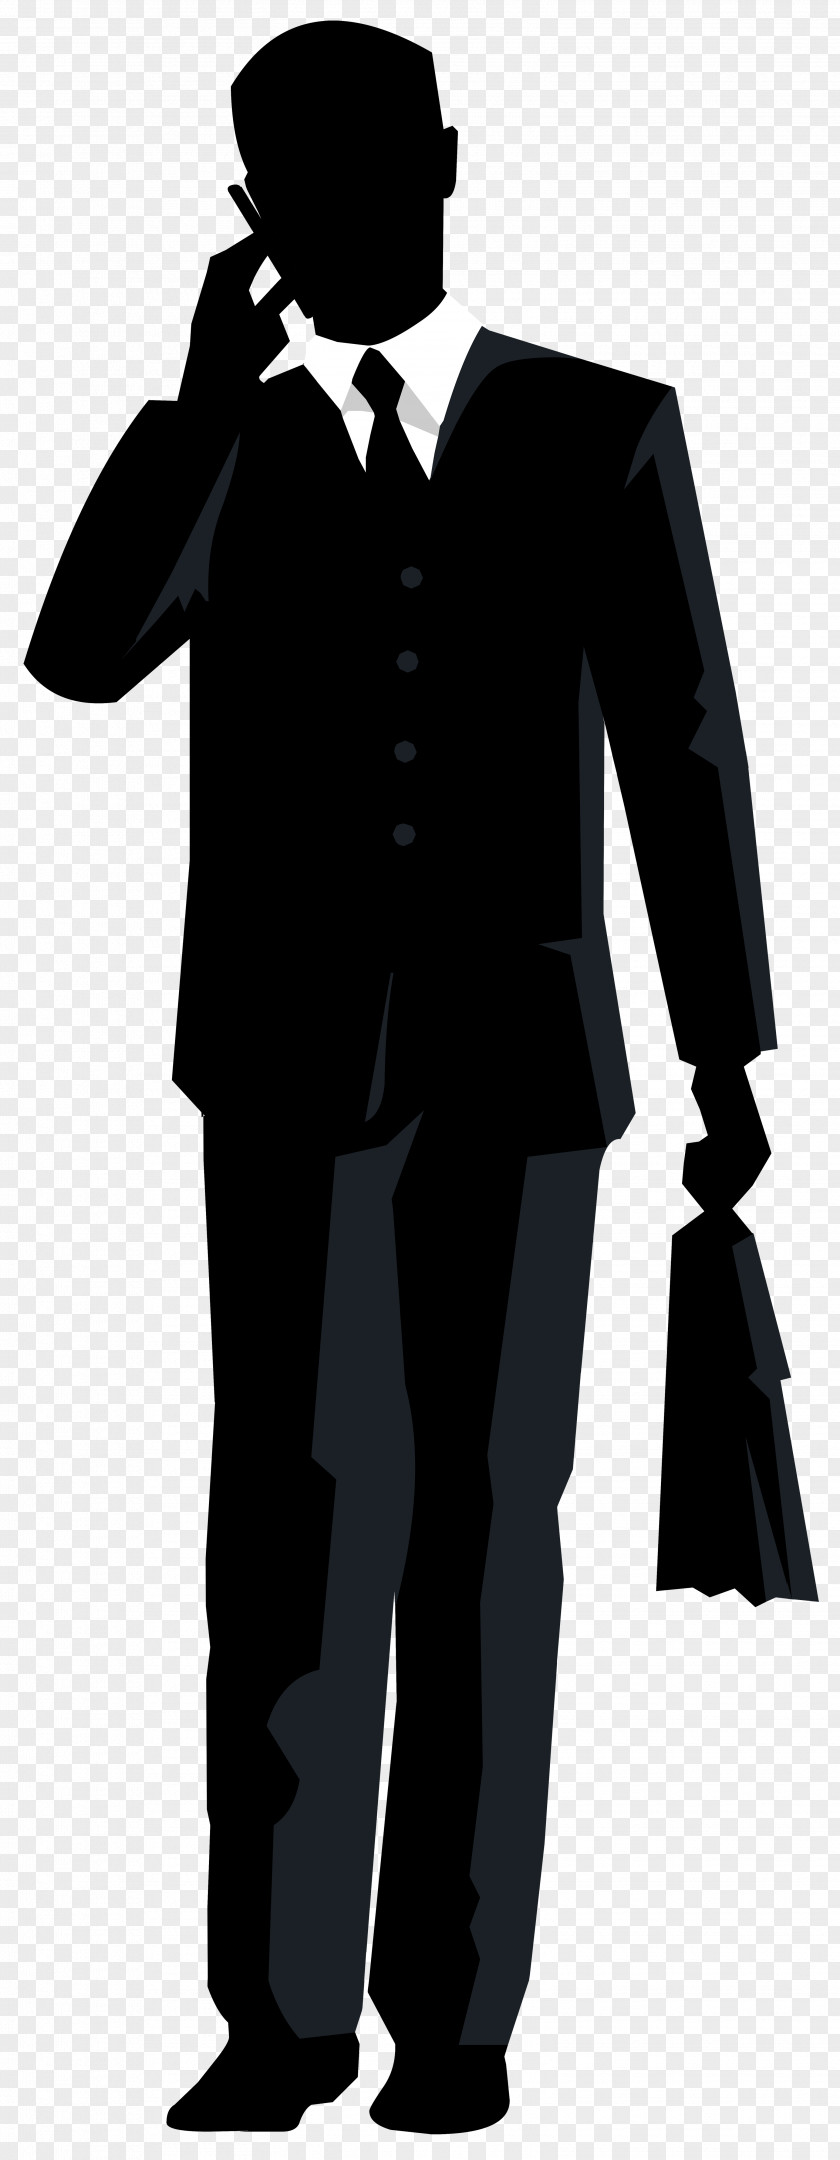 Businessman Silhouette Transparent Clip Art Image PNG